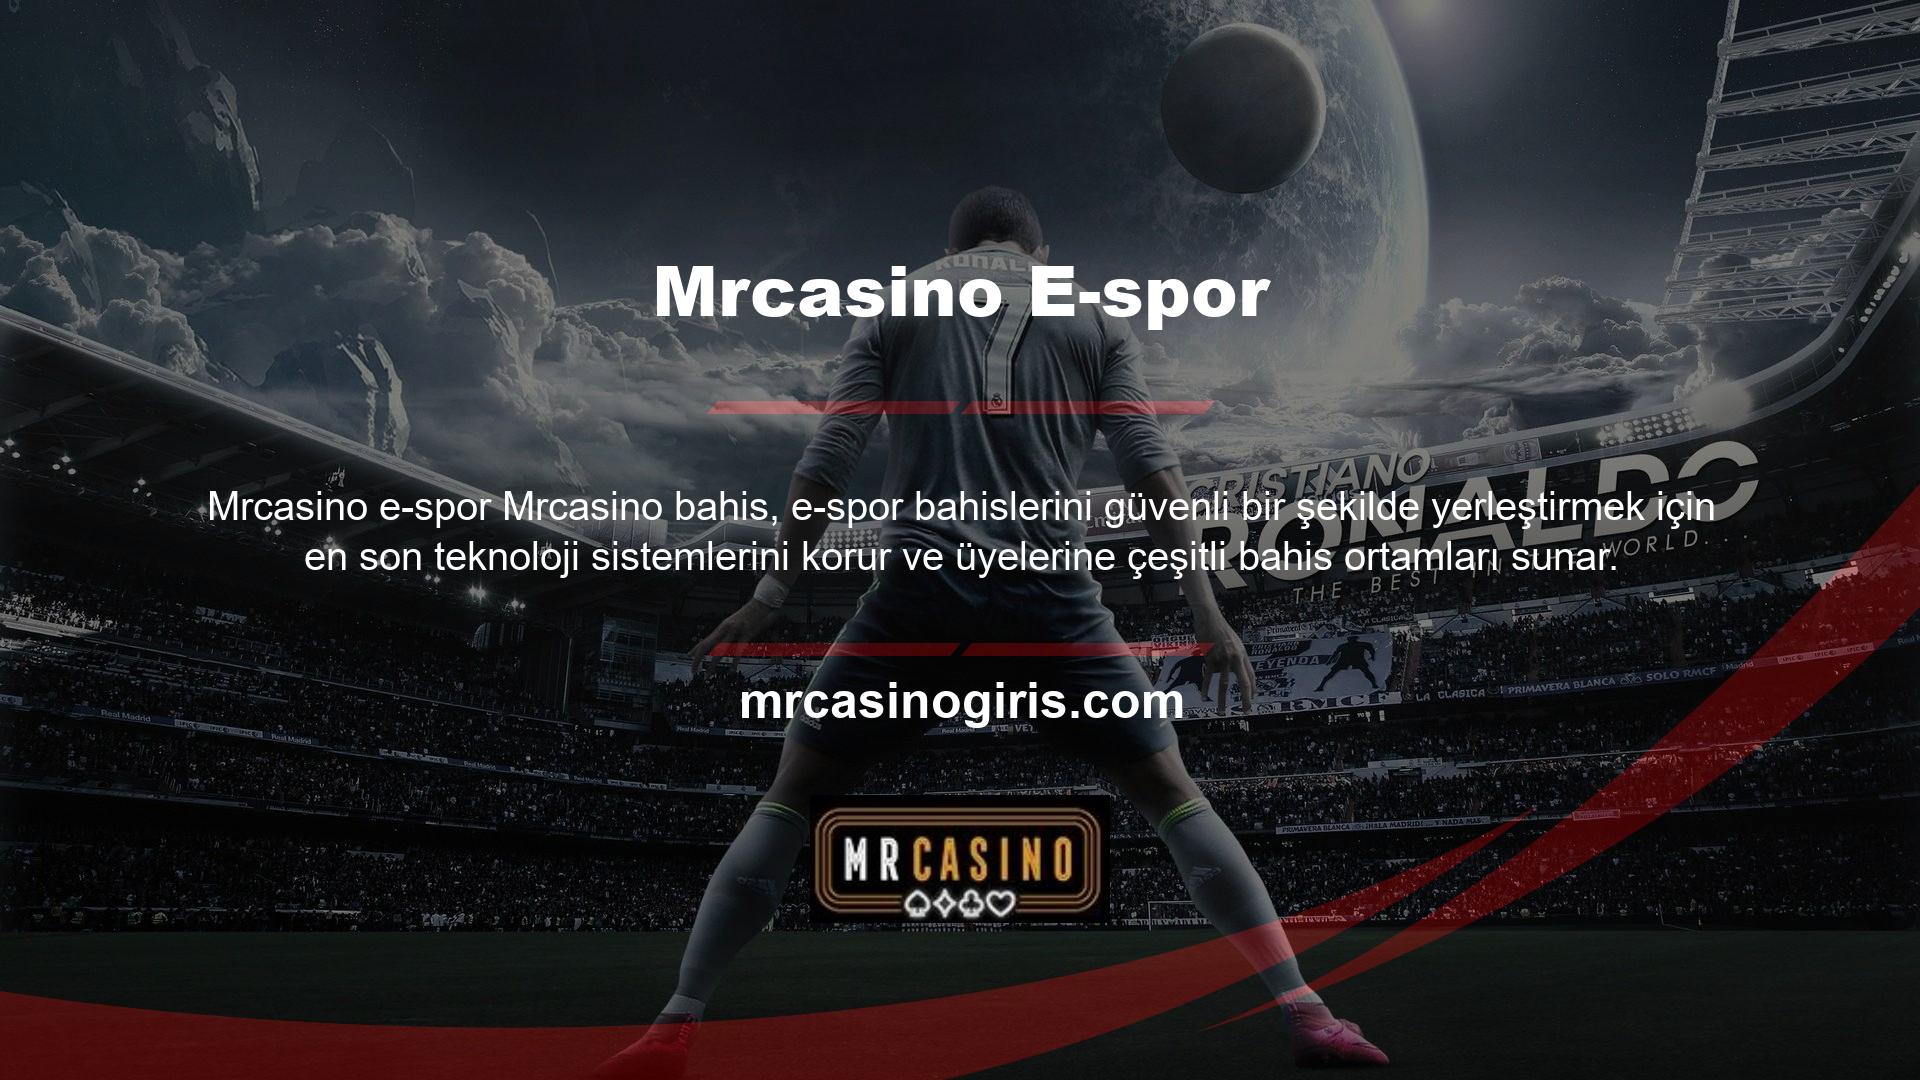 Mrcasino derecelendirmeleri, analizleri, destek hizmetleri ve canlı elektronik spor bahisleri